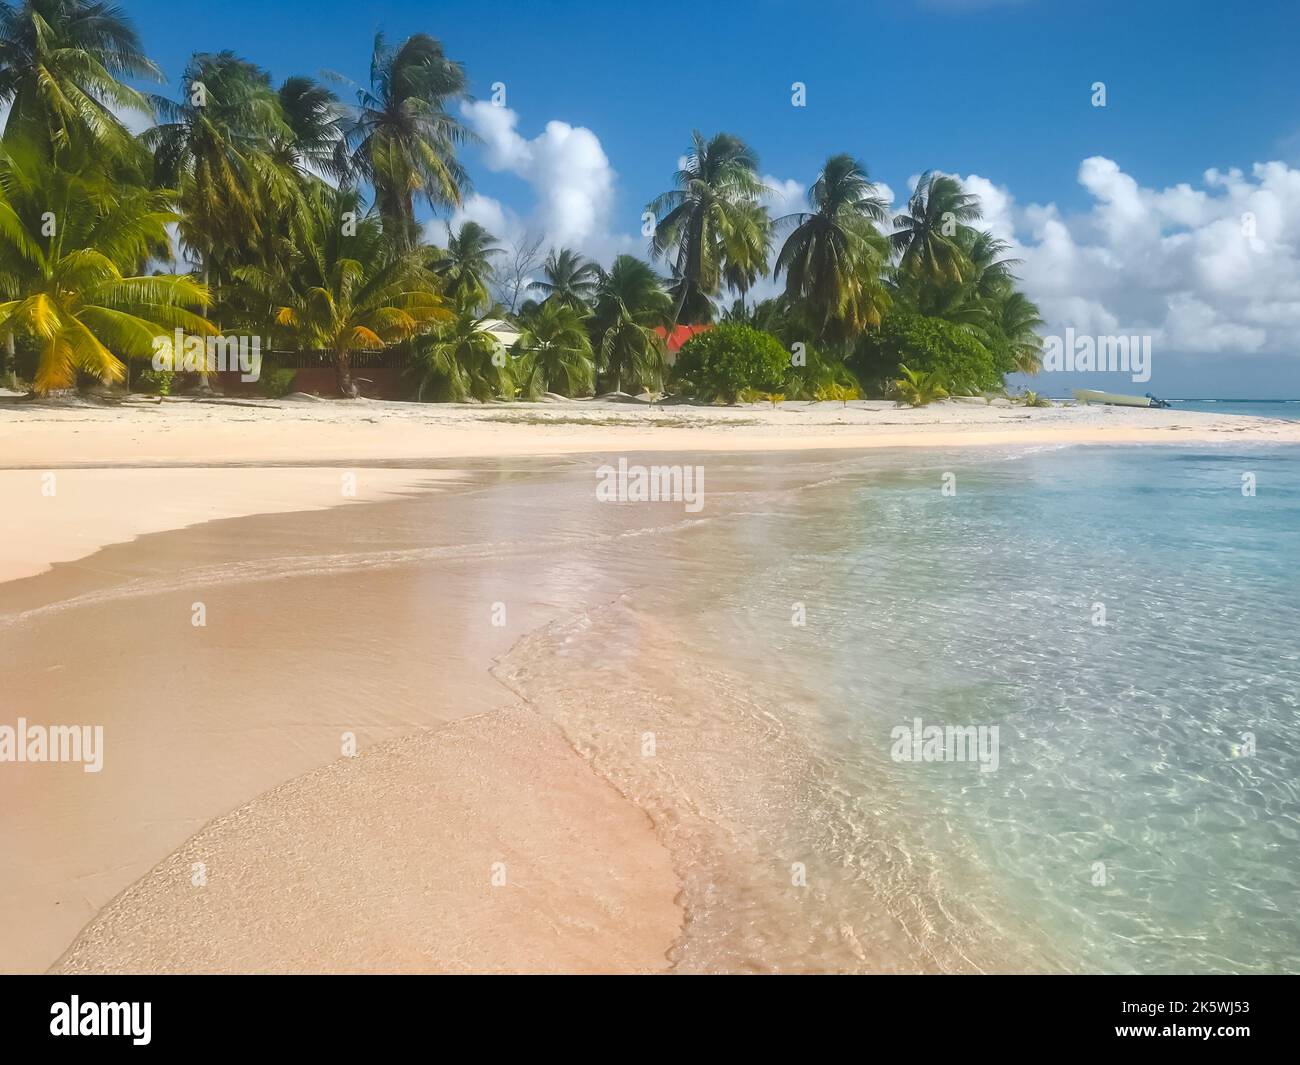 Spiaggia di sabbia rosa ideale sull'isola tropicale in Polinesia Francese. Palme sulla costa dell'oceano, acqua cristallina nelle giornate di sole. Bellissimo paesaggio naturale. Incredibile sfondo naturale. Viaggi, vacanze turistiche Foto Stock